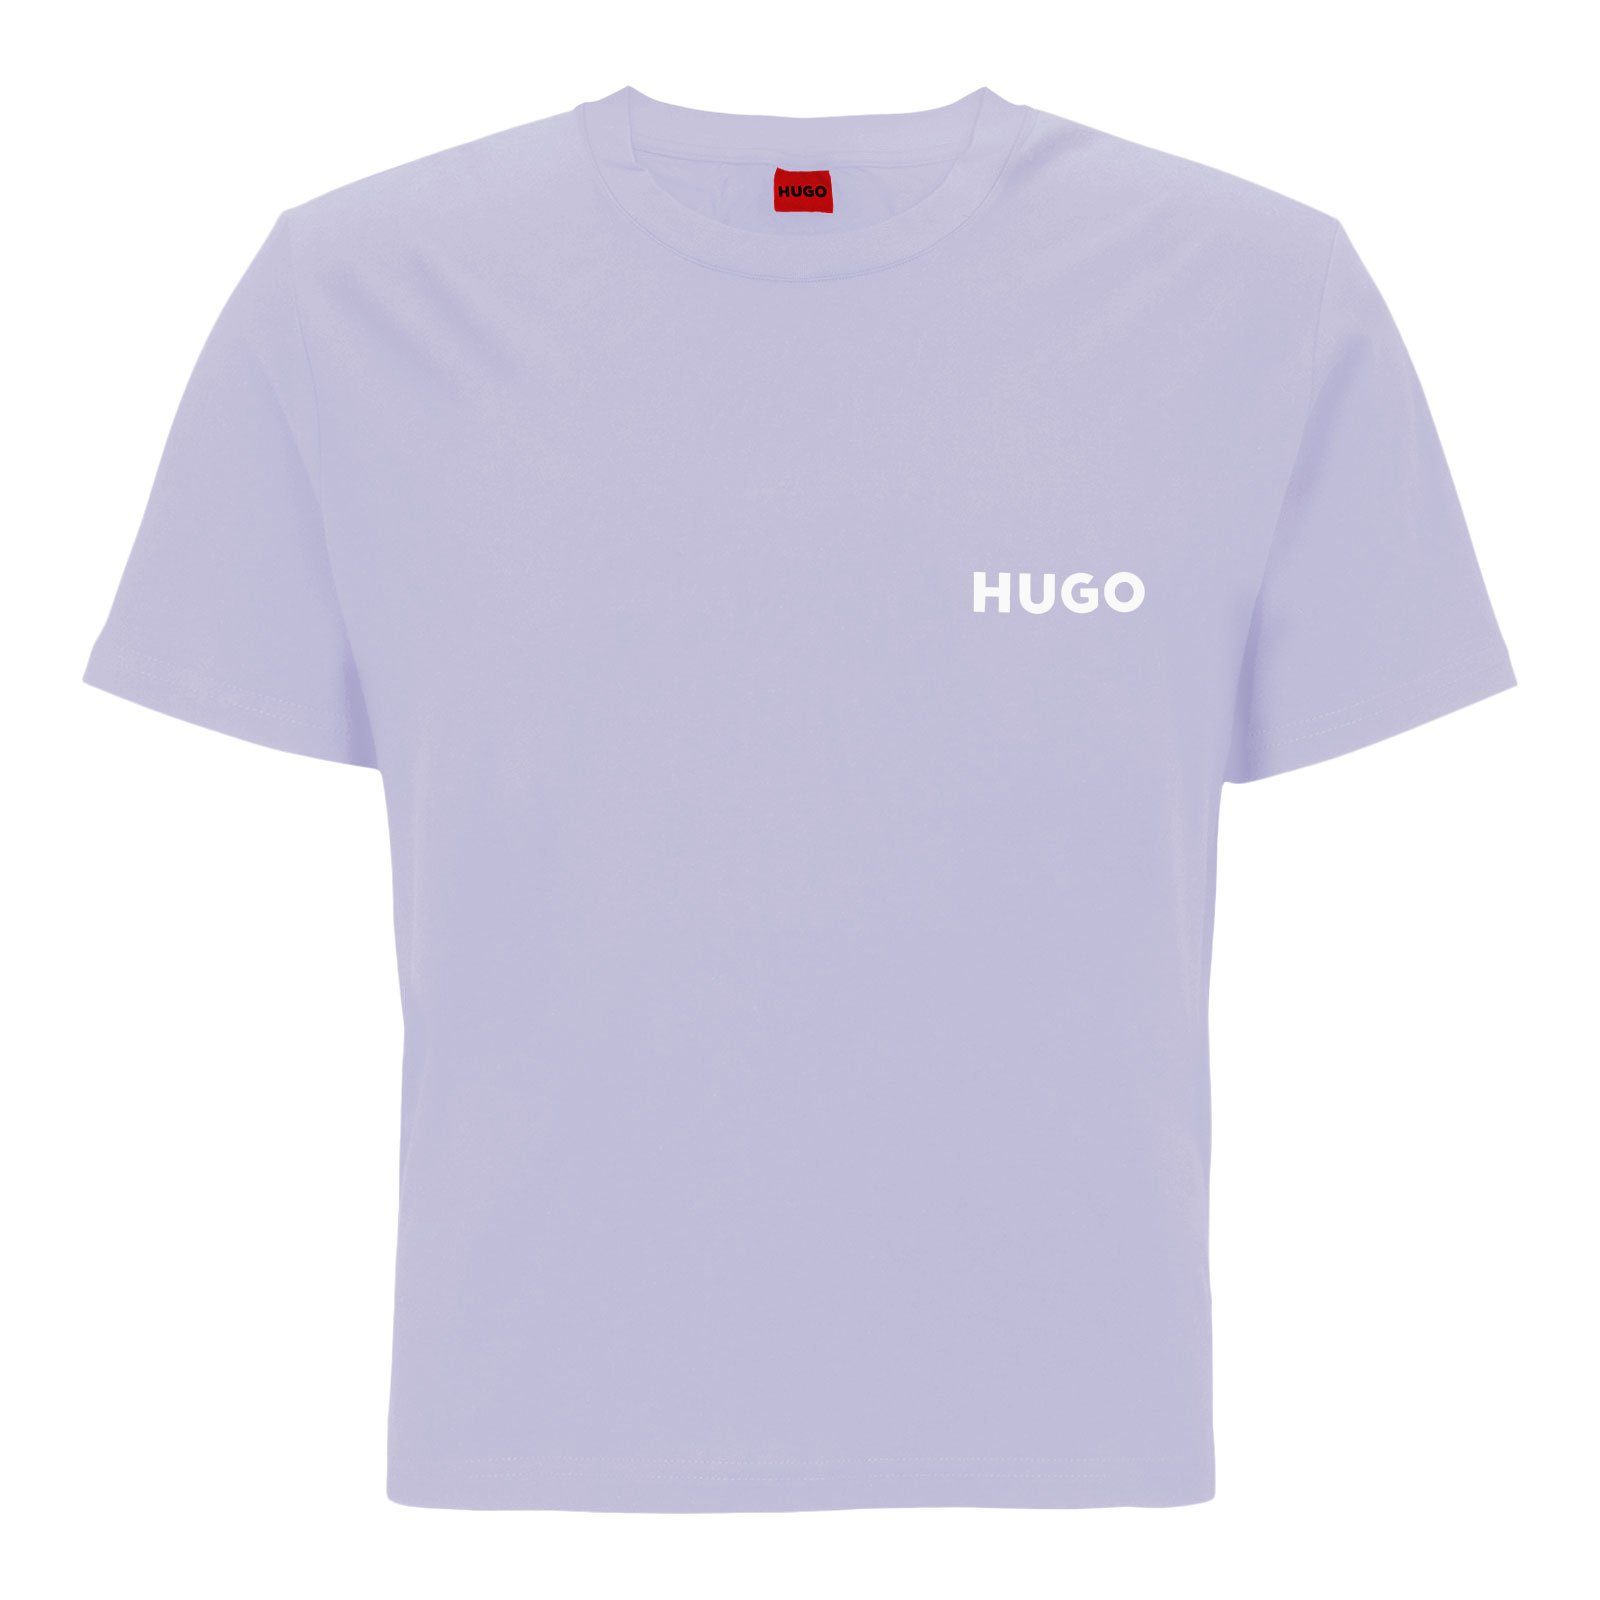 Unite HUGO purple 535 T-Shirt linken T-Shirt Marken-Logo mit light der Brust auf